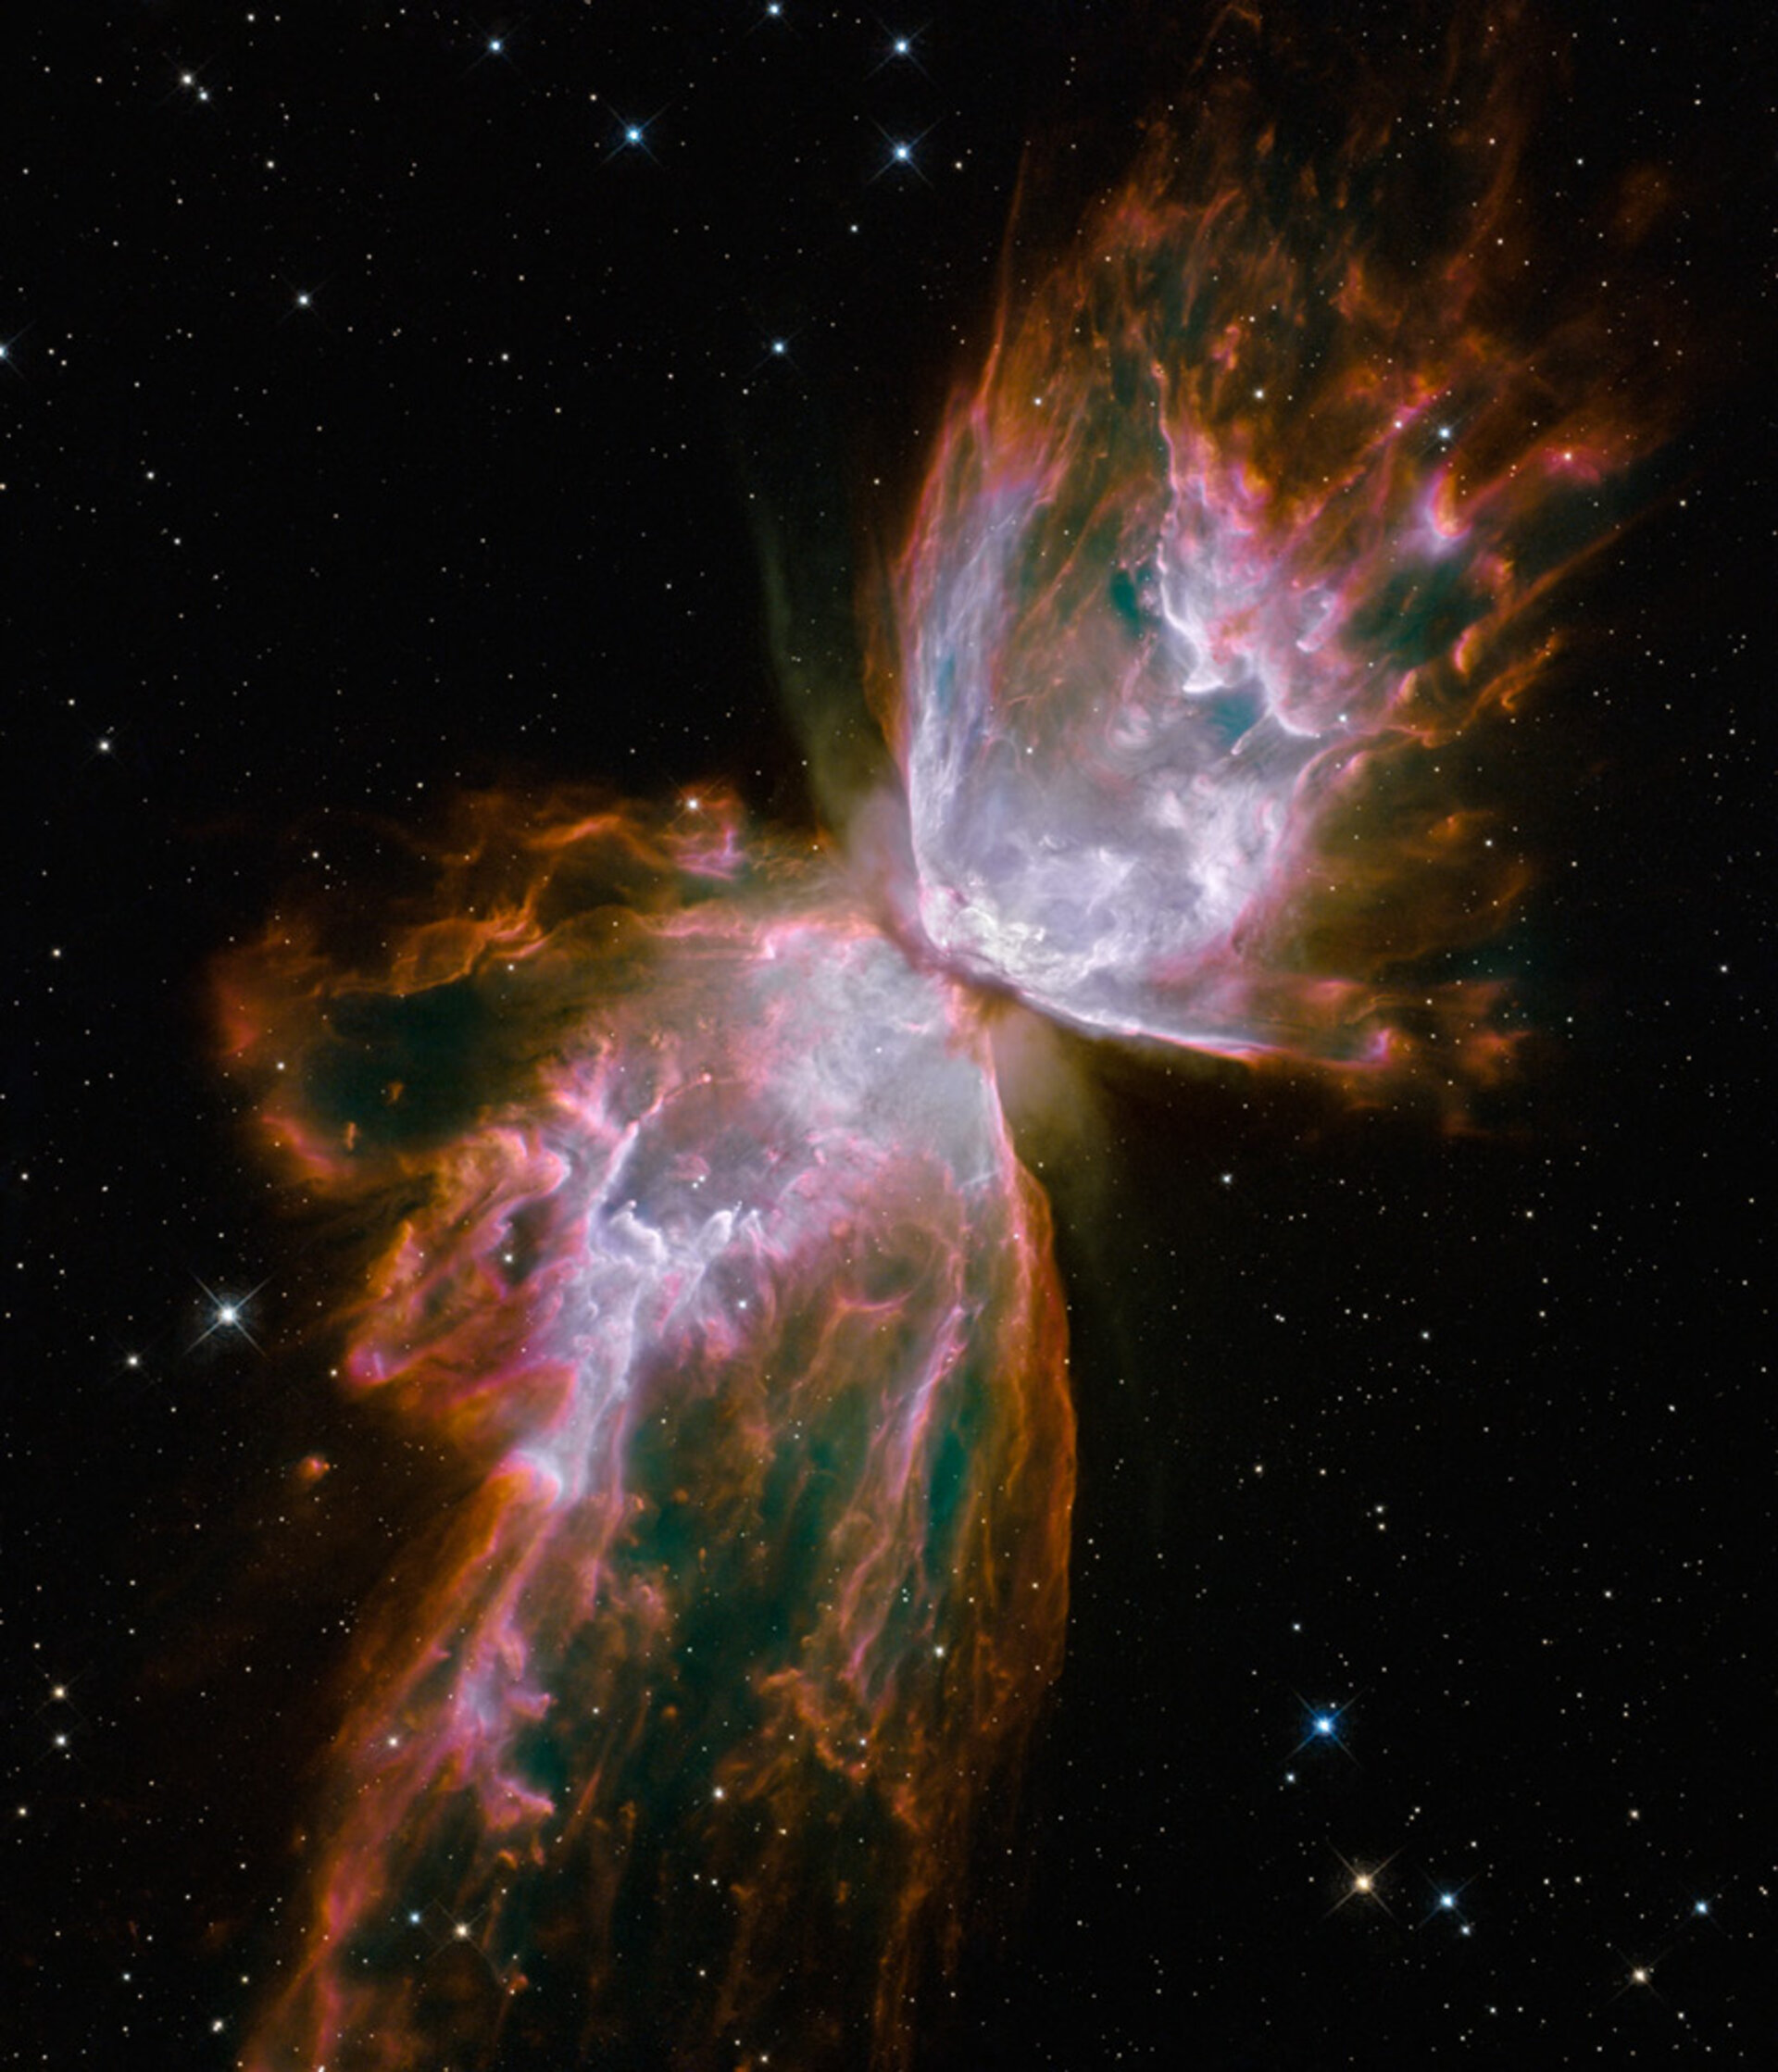 Butterfly Nebula as seen by Hubble